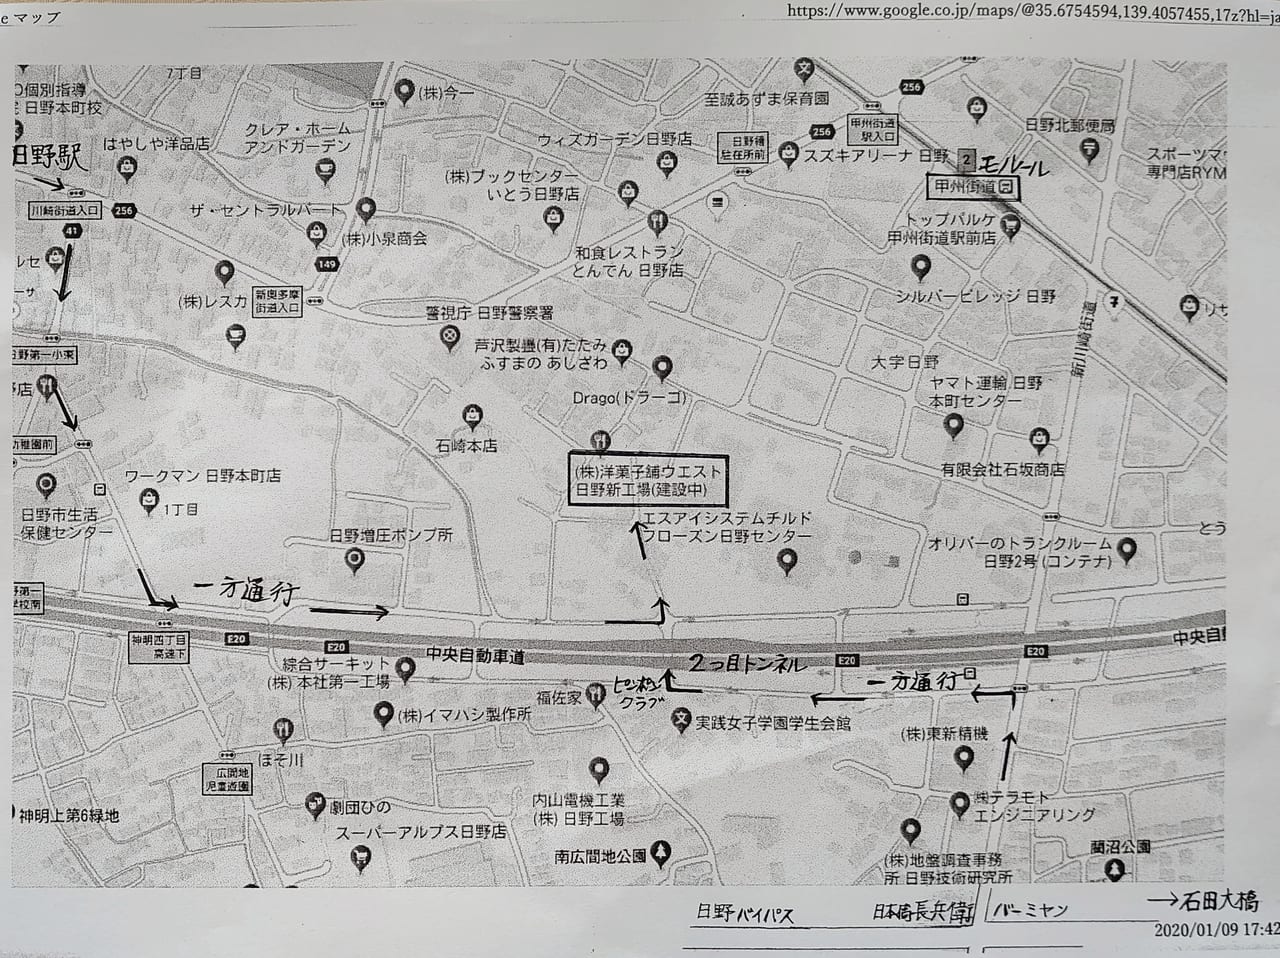 洋菓子舗ウエストの日野新工場への地図